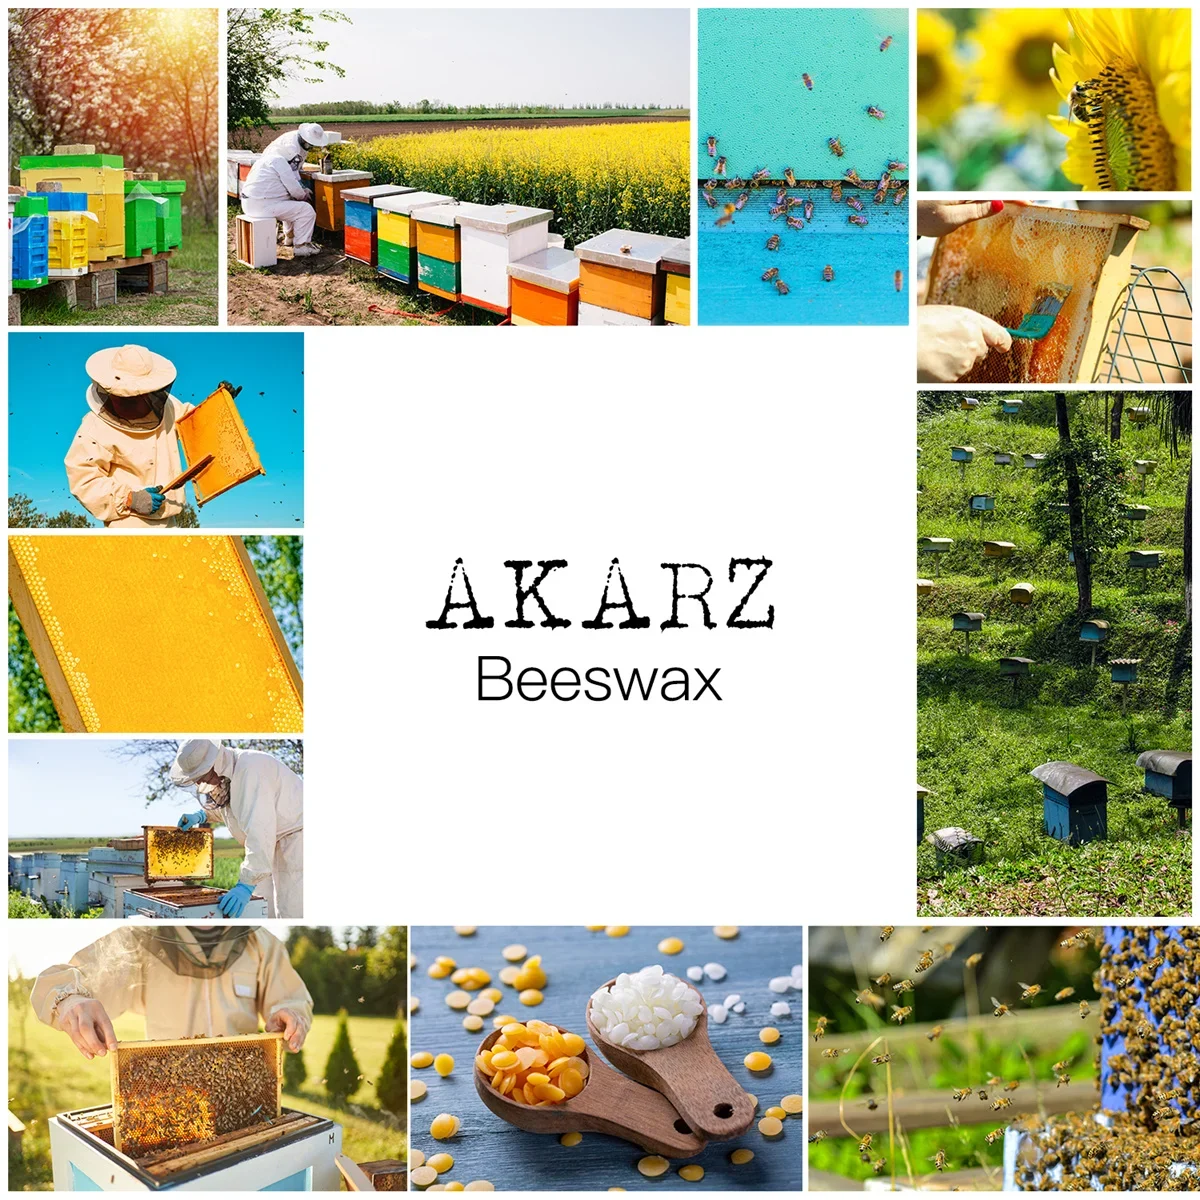 Желтый пчелиный воск AKARZ, чистый натуральный косметический воск высшего качества для «сделай сам», Бальзамы для губ, лосьоны, свечи, пчелиные восковые пастики